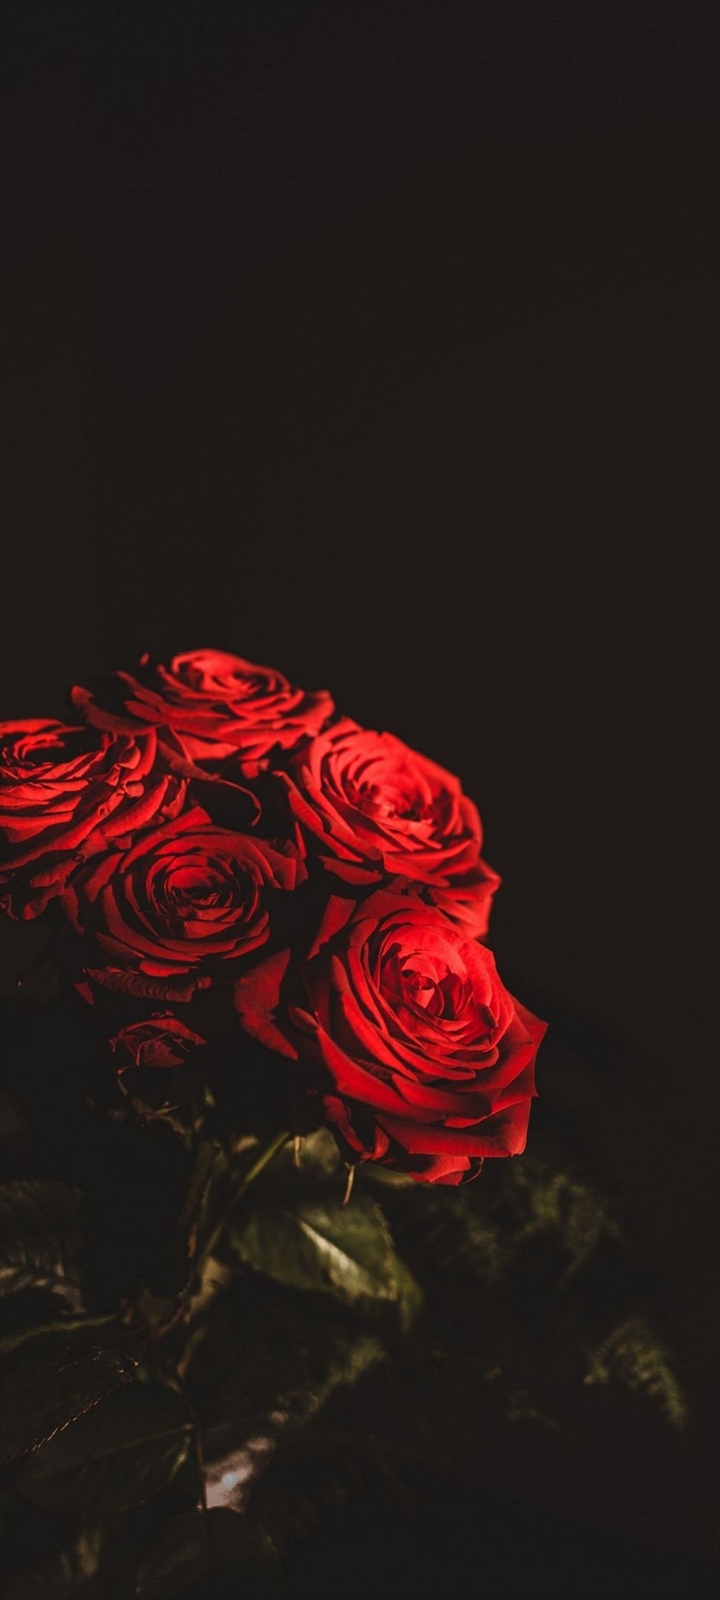 綺麗な赤い薔薇の束 Galaxy A32 5g Androidスマホ壁紙 待ち受け スマラン